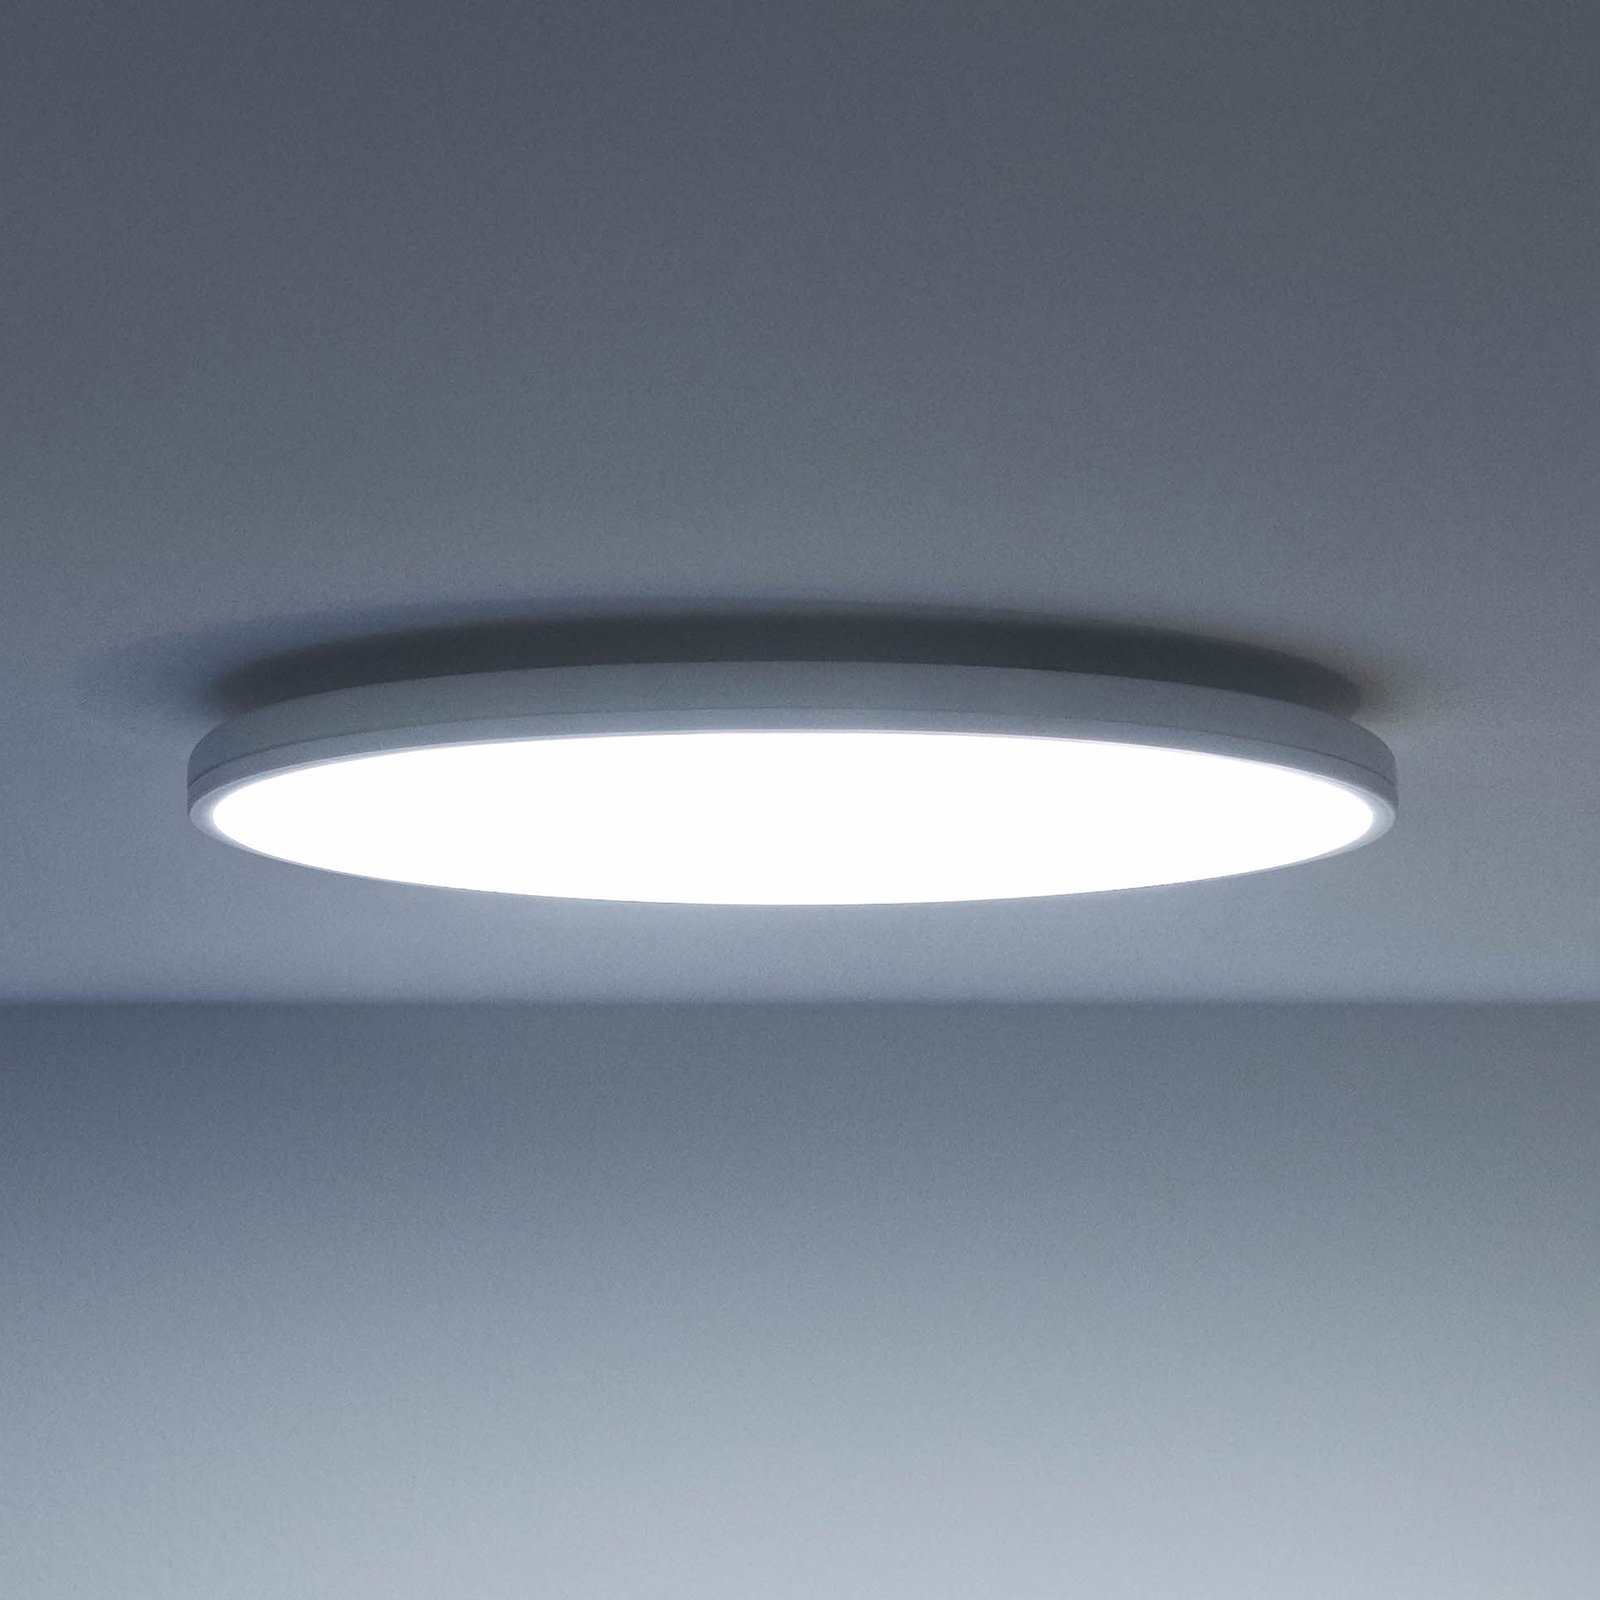 WiZ Rune LED ceiling light, white